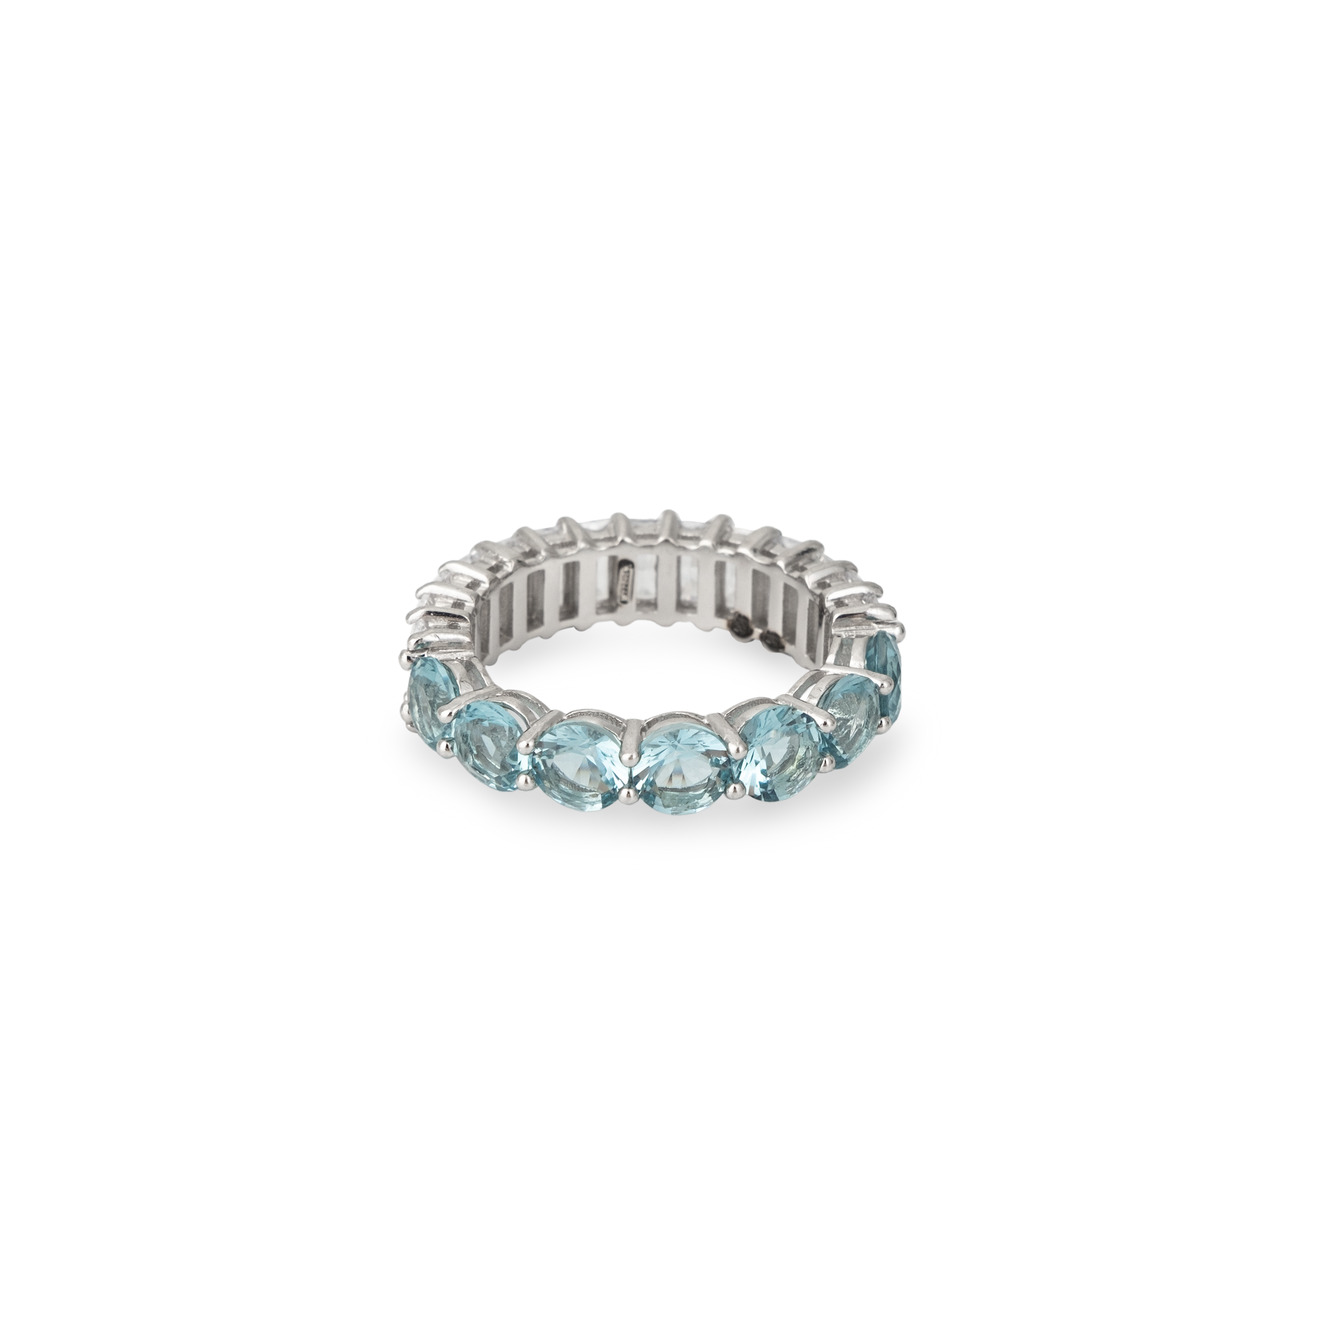 Holy Silver Кольцо-дорожка из серебра с голубыми и белыми кристаллами разной формы holy silver серебряные серьги с крупными голубыми кристаллами